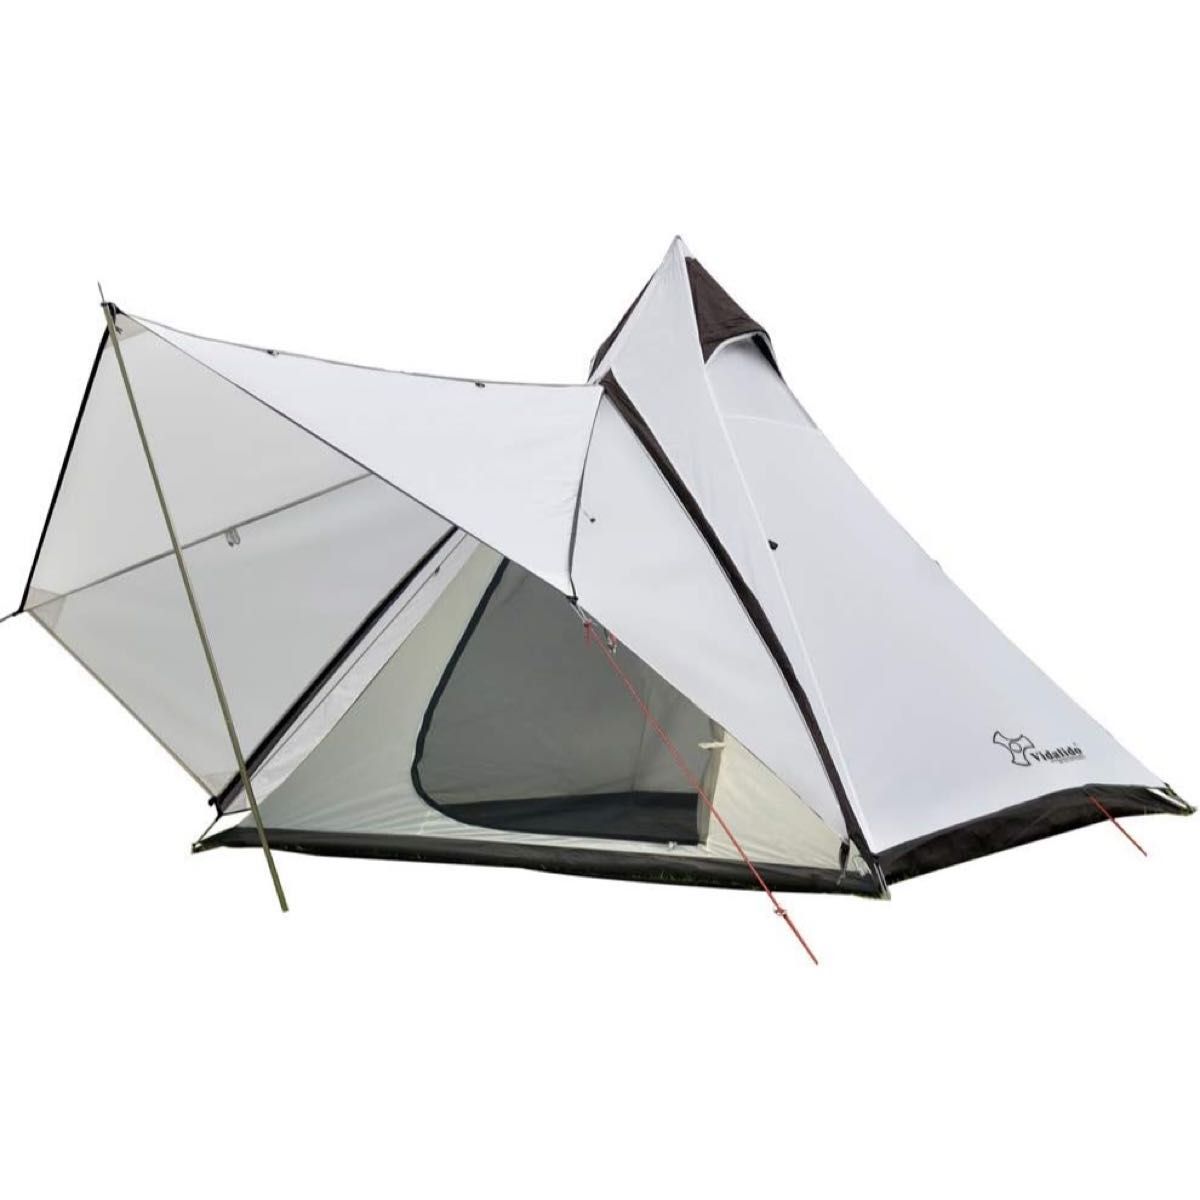 ワンポールテント キャンプテント テント 4人用 換気窓 軽量 アウトドア